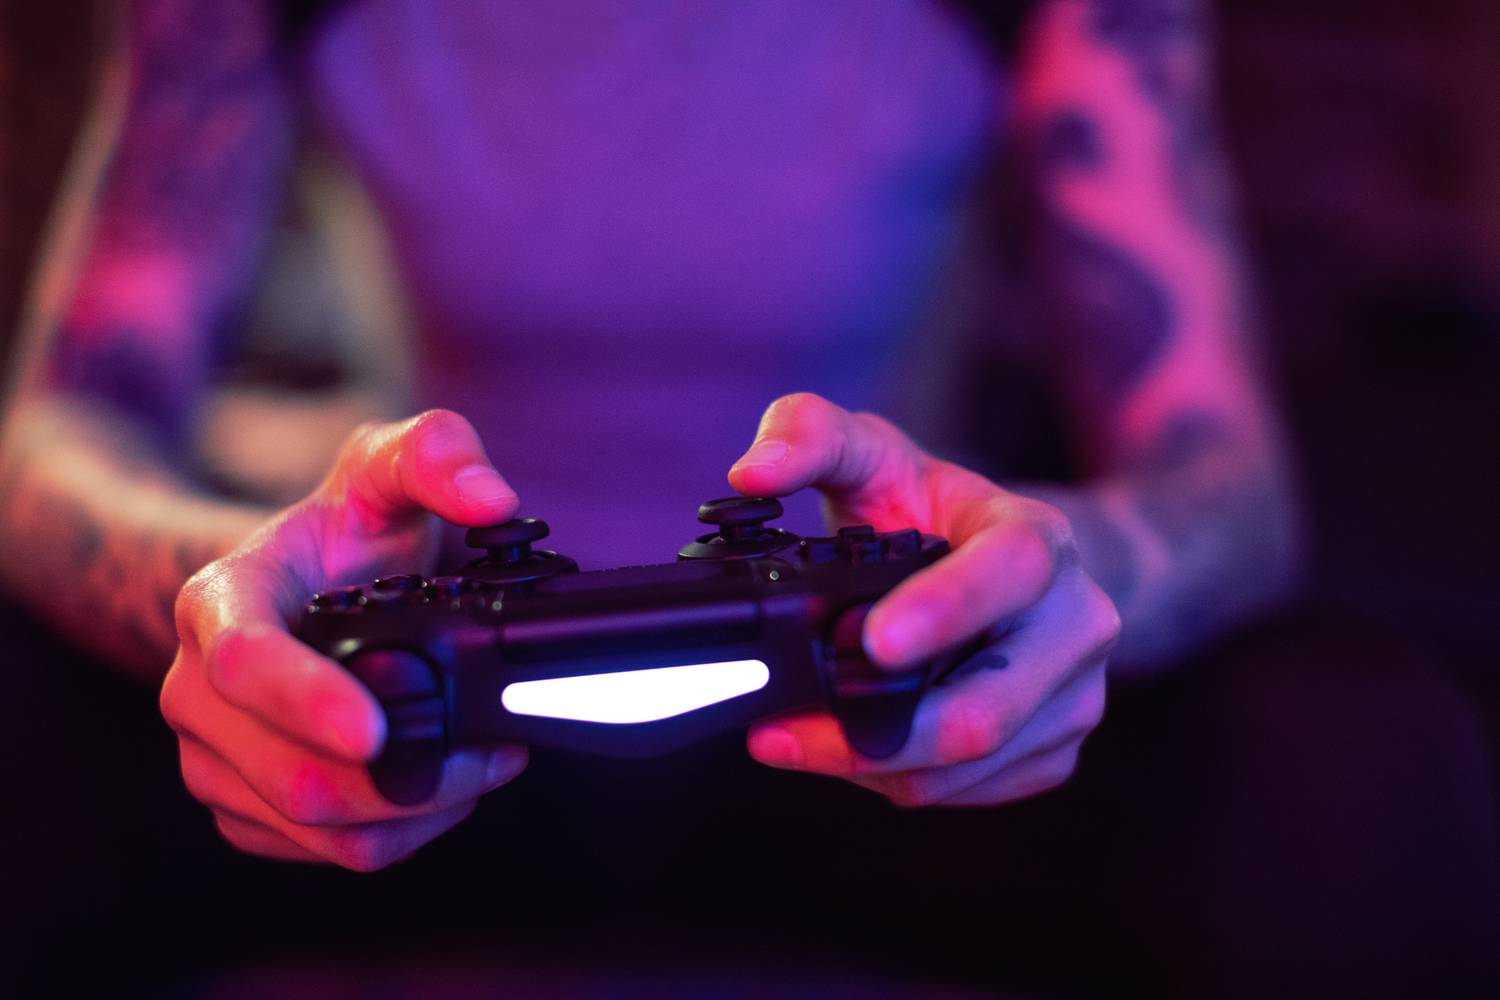 pulzusszám videojátékok befolyásolják a mentális egészséget szívrohamos betegek egészségbiztosítása